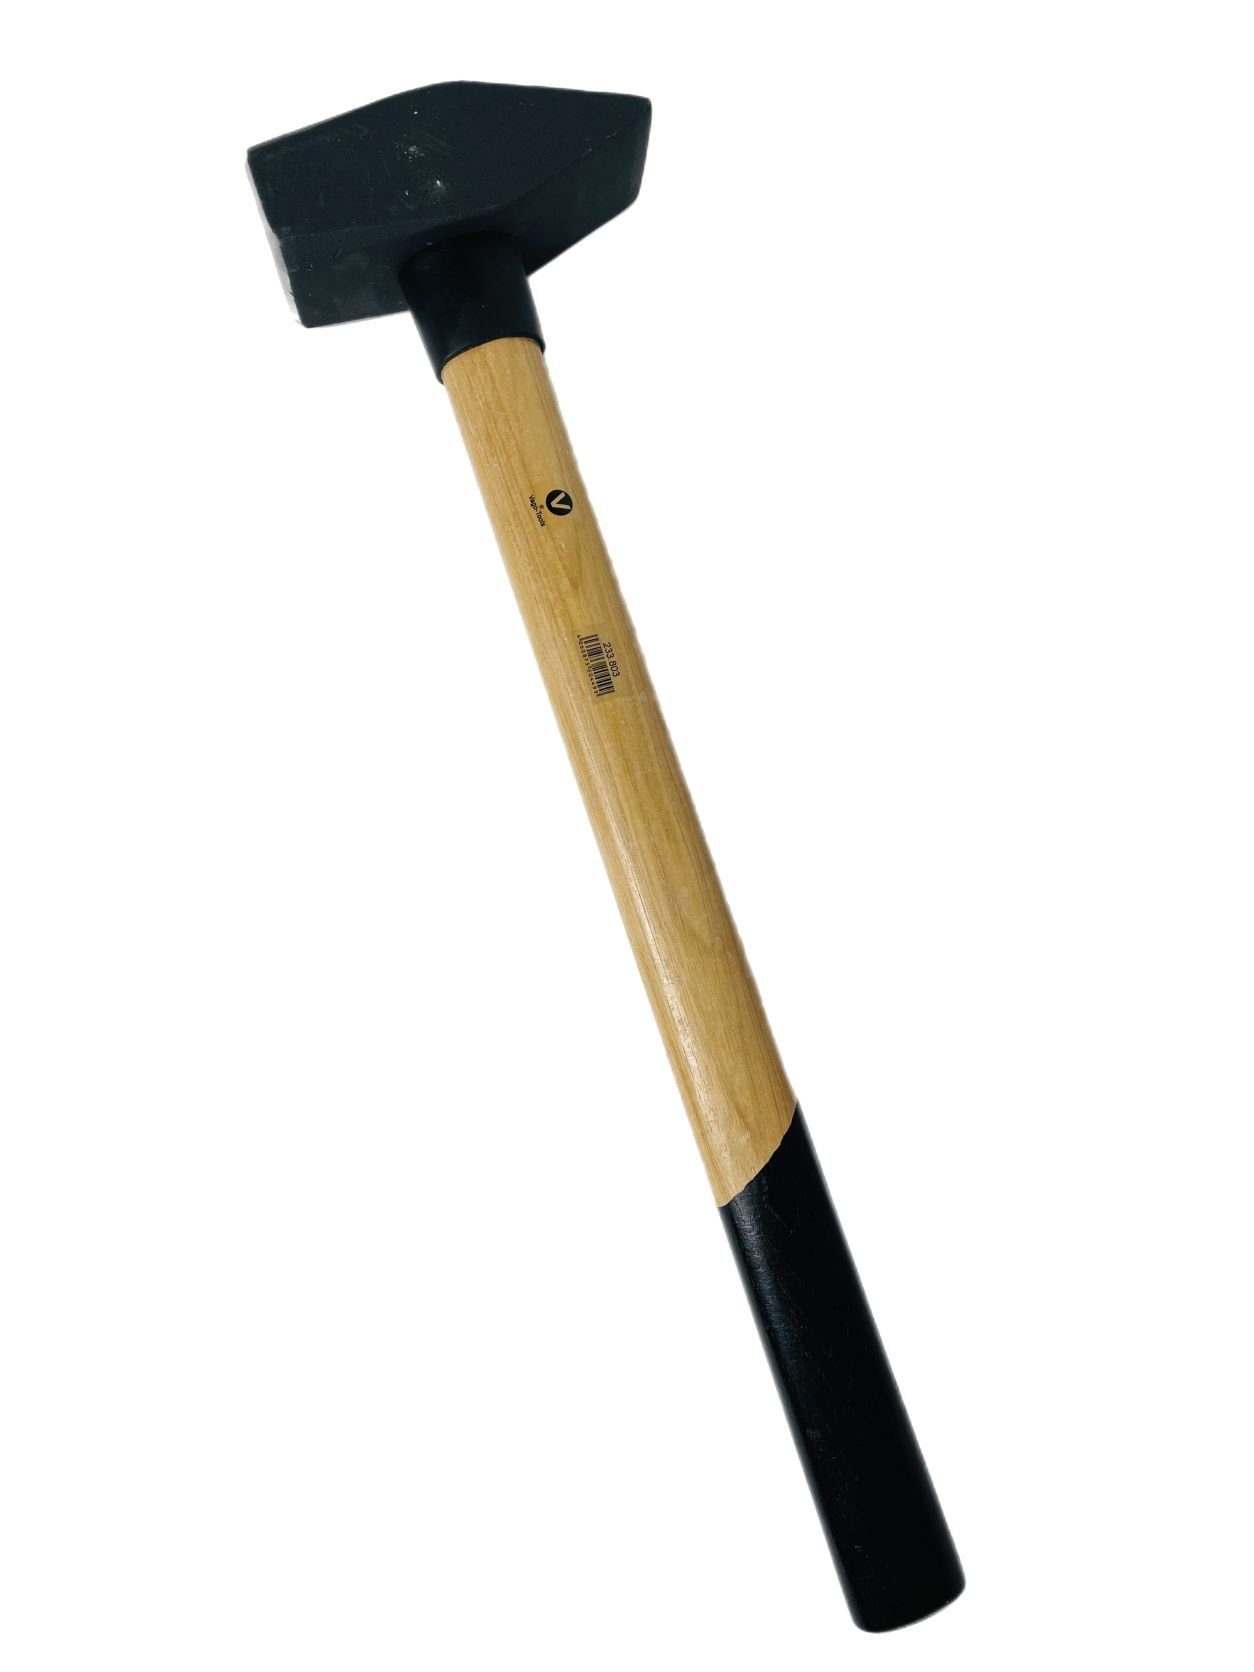 Hämmer VaGo-Tools Hammer Hammer Hickorystiel 3kg Schlosserhammer